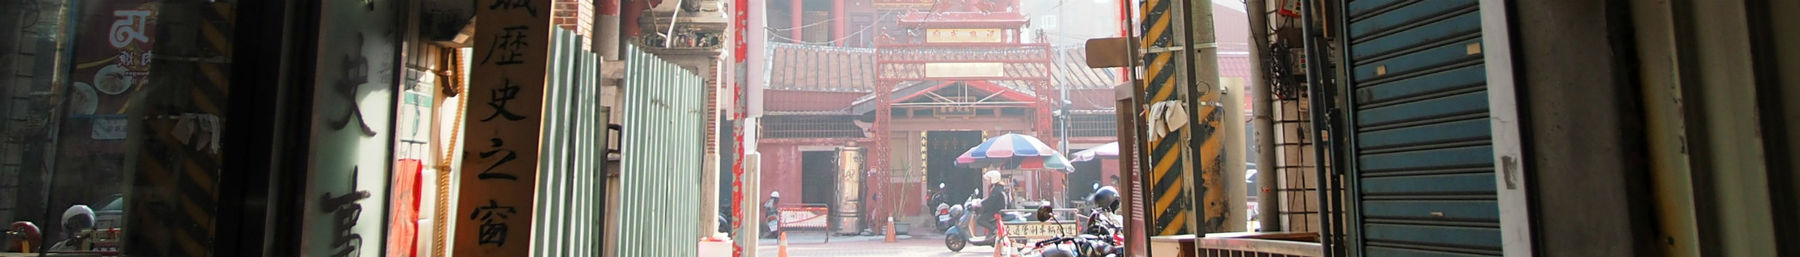 Tainan Banner Wikivoyage.jpg